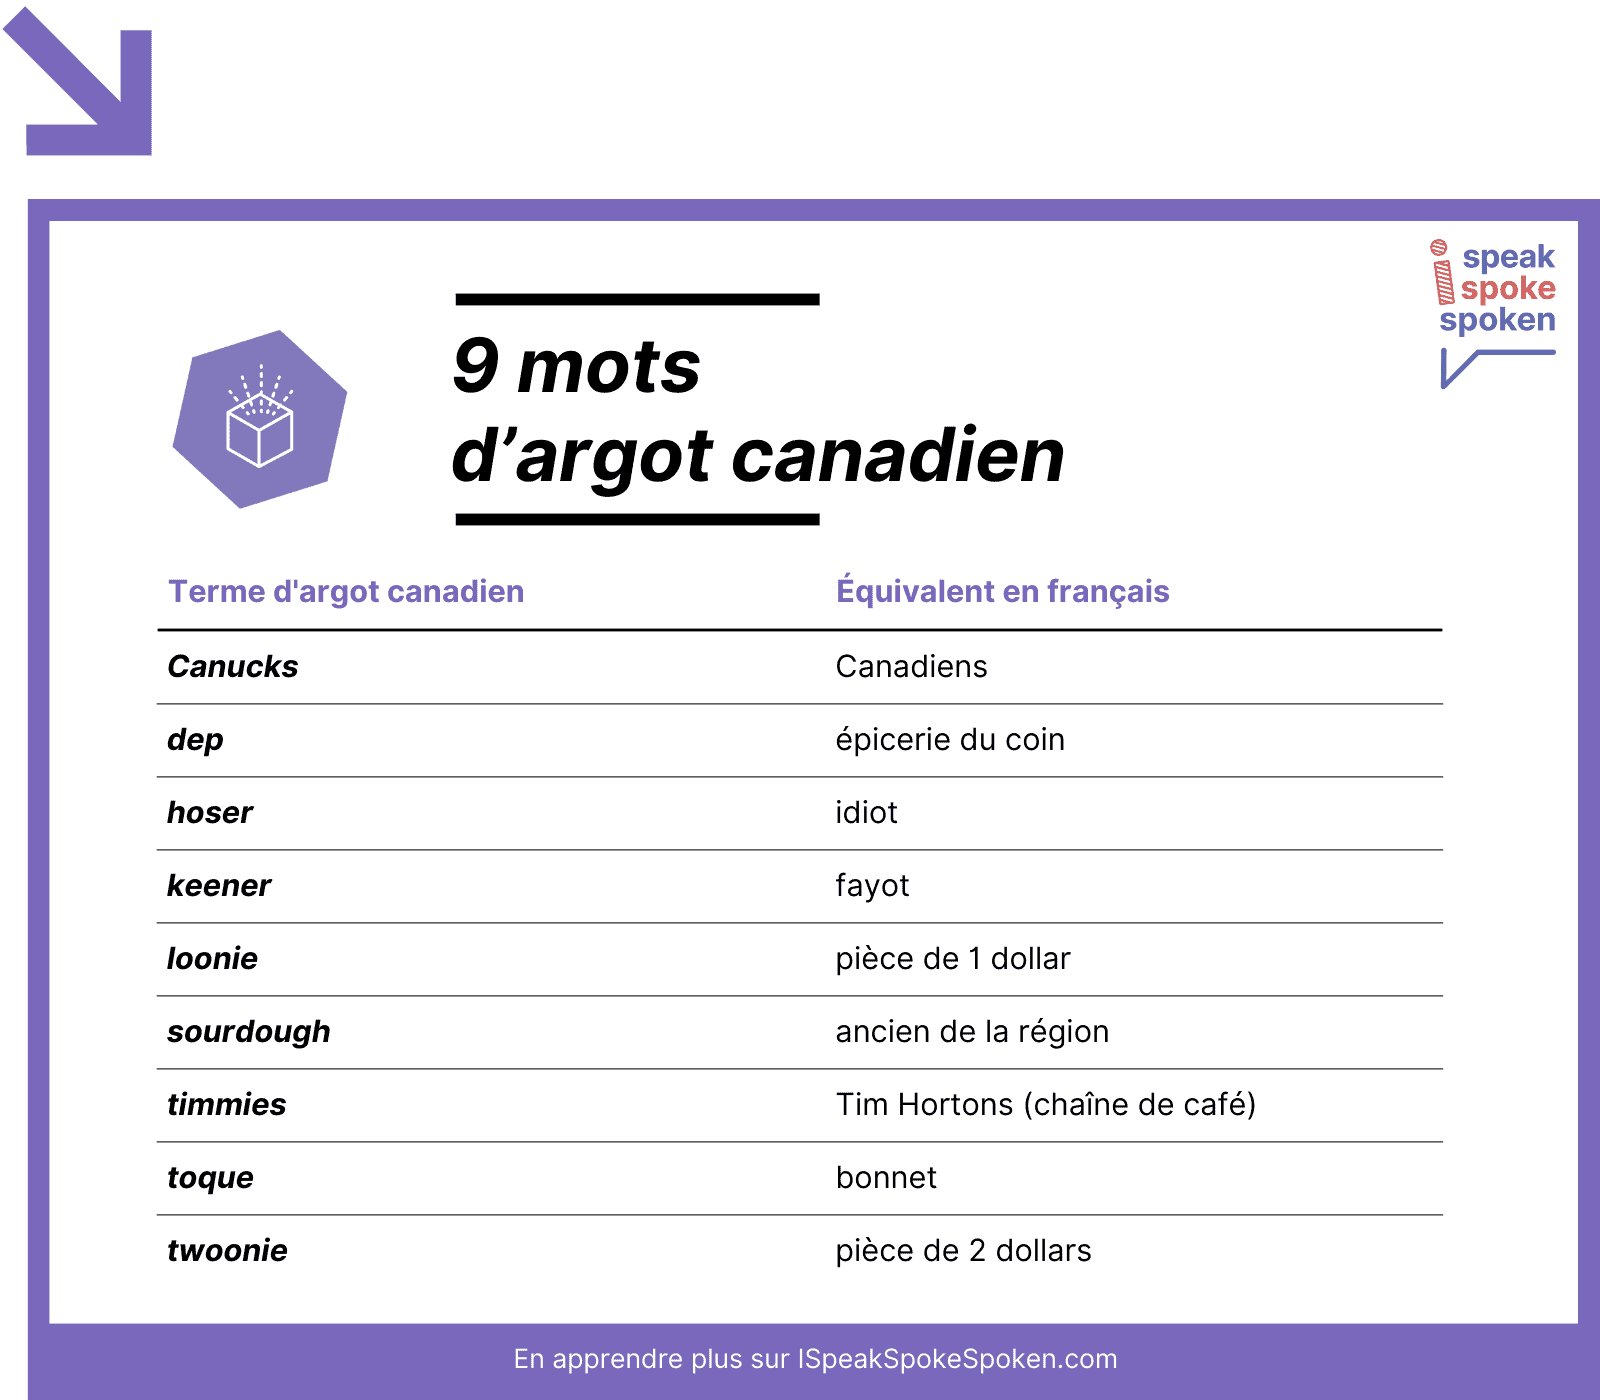 9 mots d’argot canadien